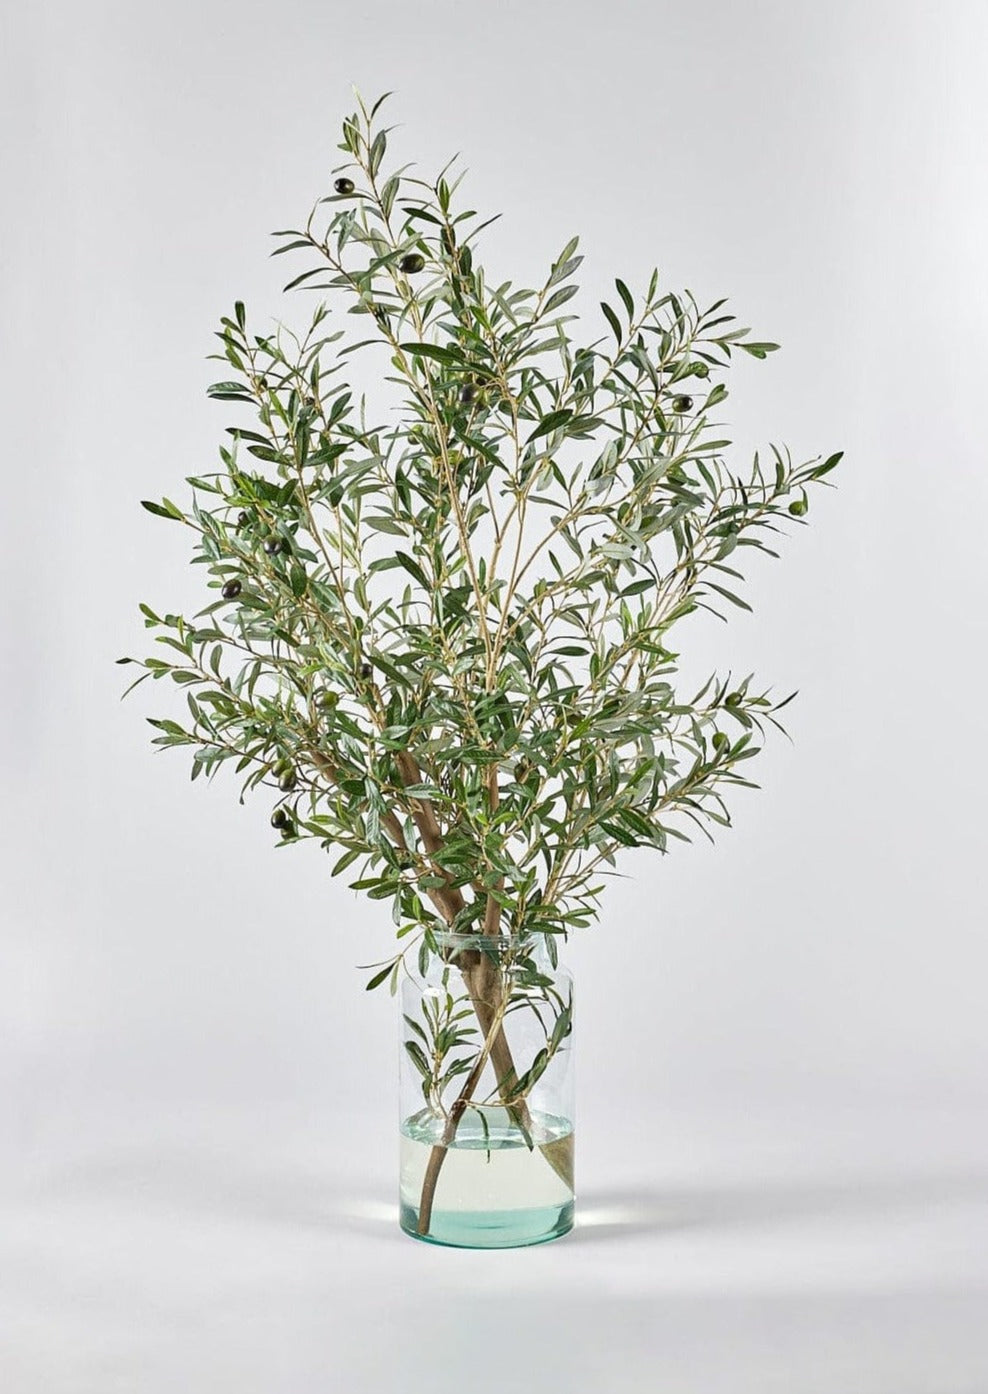 Faux Olive Leaf Branches in Glass Vase Arrangement at Afloral